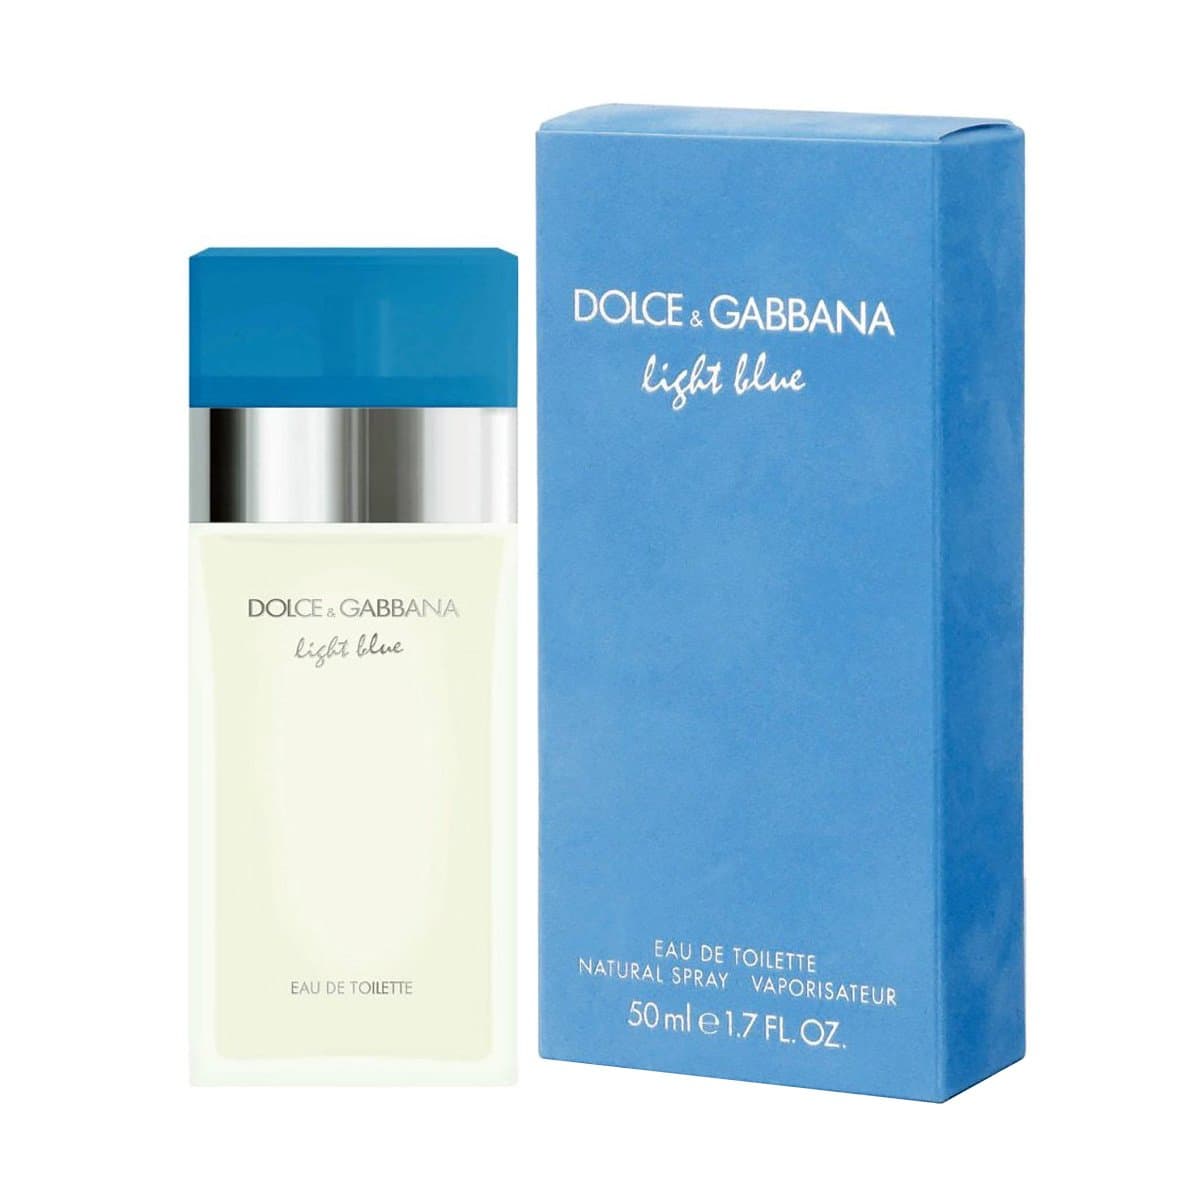 Духи дольче габбана light blue. Dolce Gabbana d g Light Blue 100 мл. Dolce Gabbana Light Blue женские 100 мл. Dolce Gabbana Light Blue женские 50 мл. Light Blue Dolce & Gabbana, 100ml, EDT.